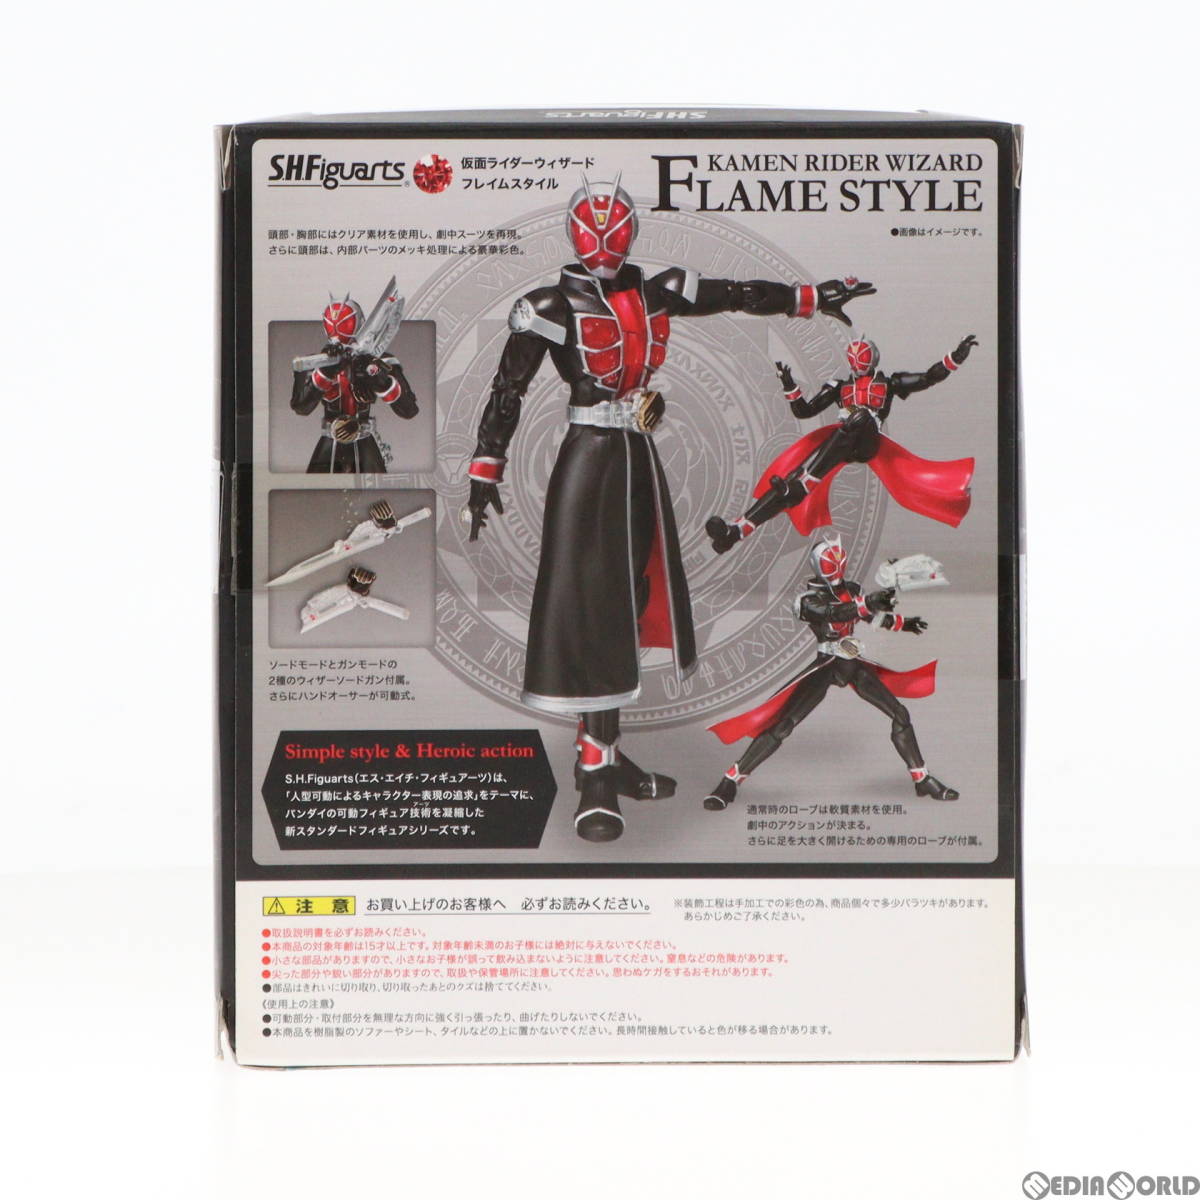 [ б/у ][FIG]S.H.Figuarts( figuarts ) Kamen Rider Wizard f Ray m стиль конечный продукт передвижной фигурка Bandai (61142378)